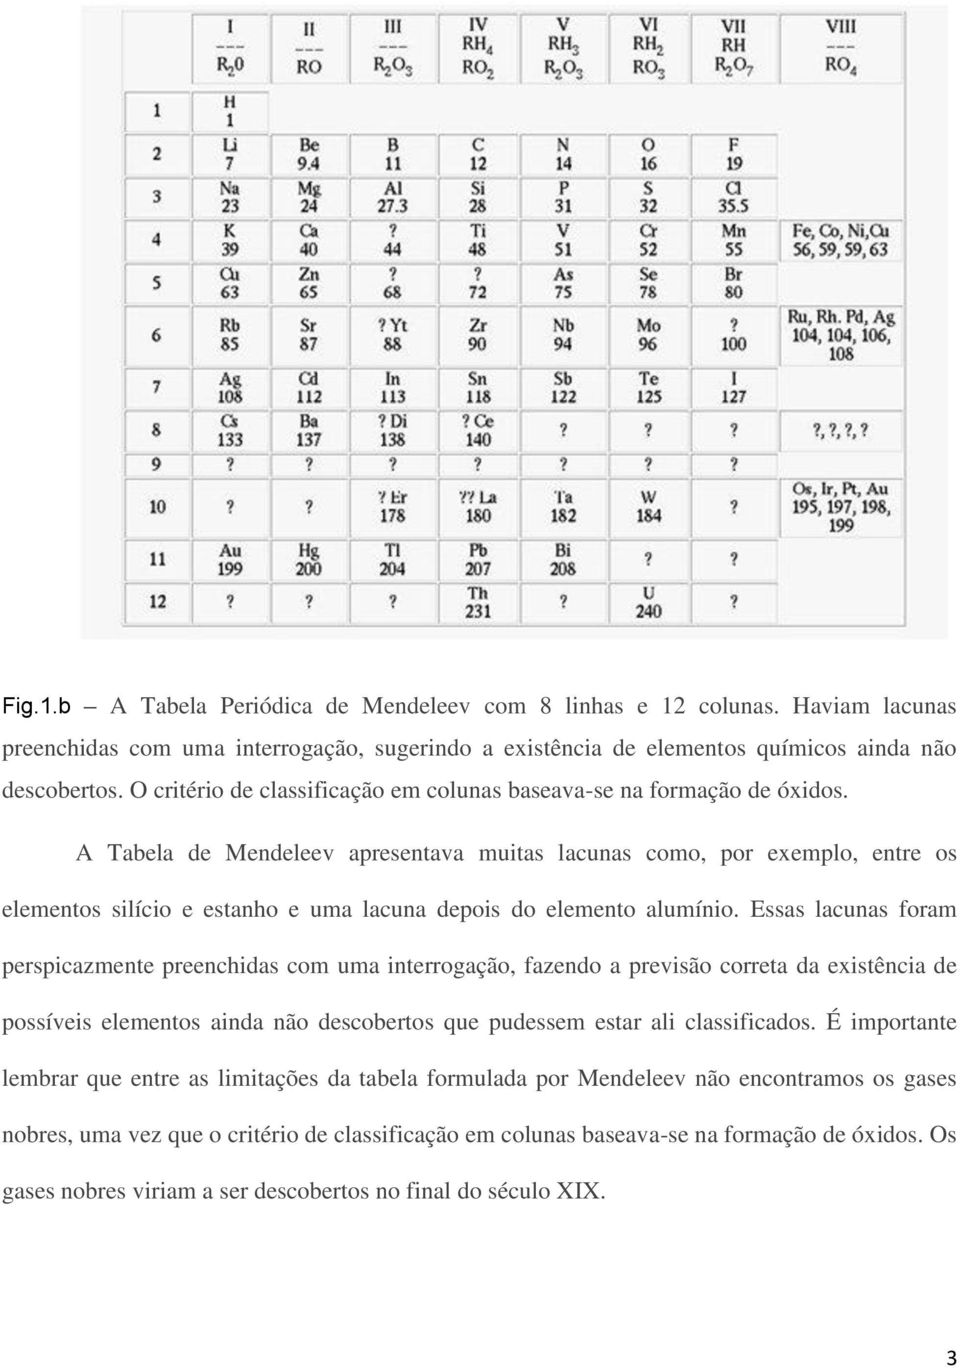 A Tabela de Mendeleev apresentava muitas lacunas como, por exemplo, entre os elementos silício e estanho e uma lacuna depois do elemento alumínio.